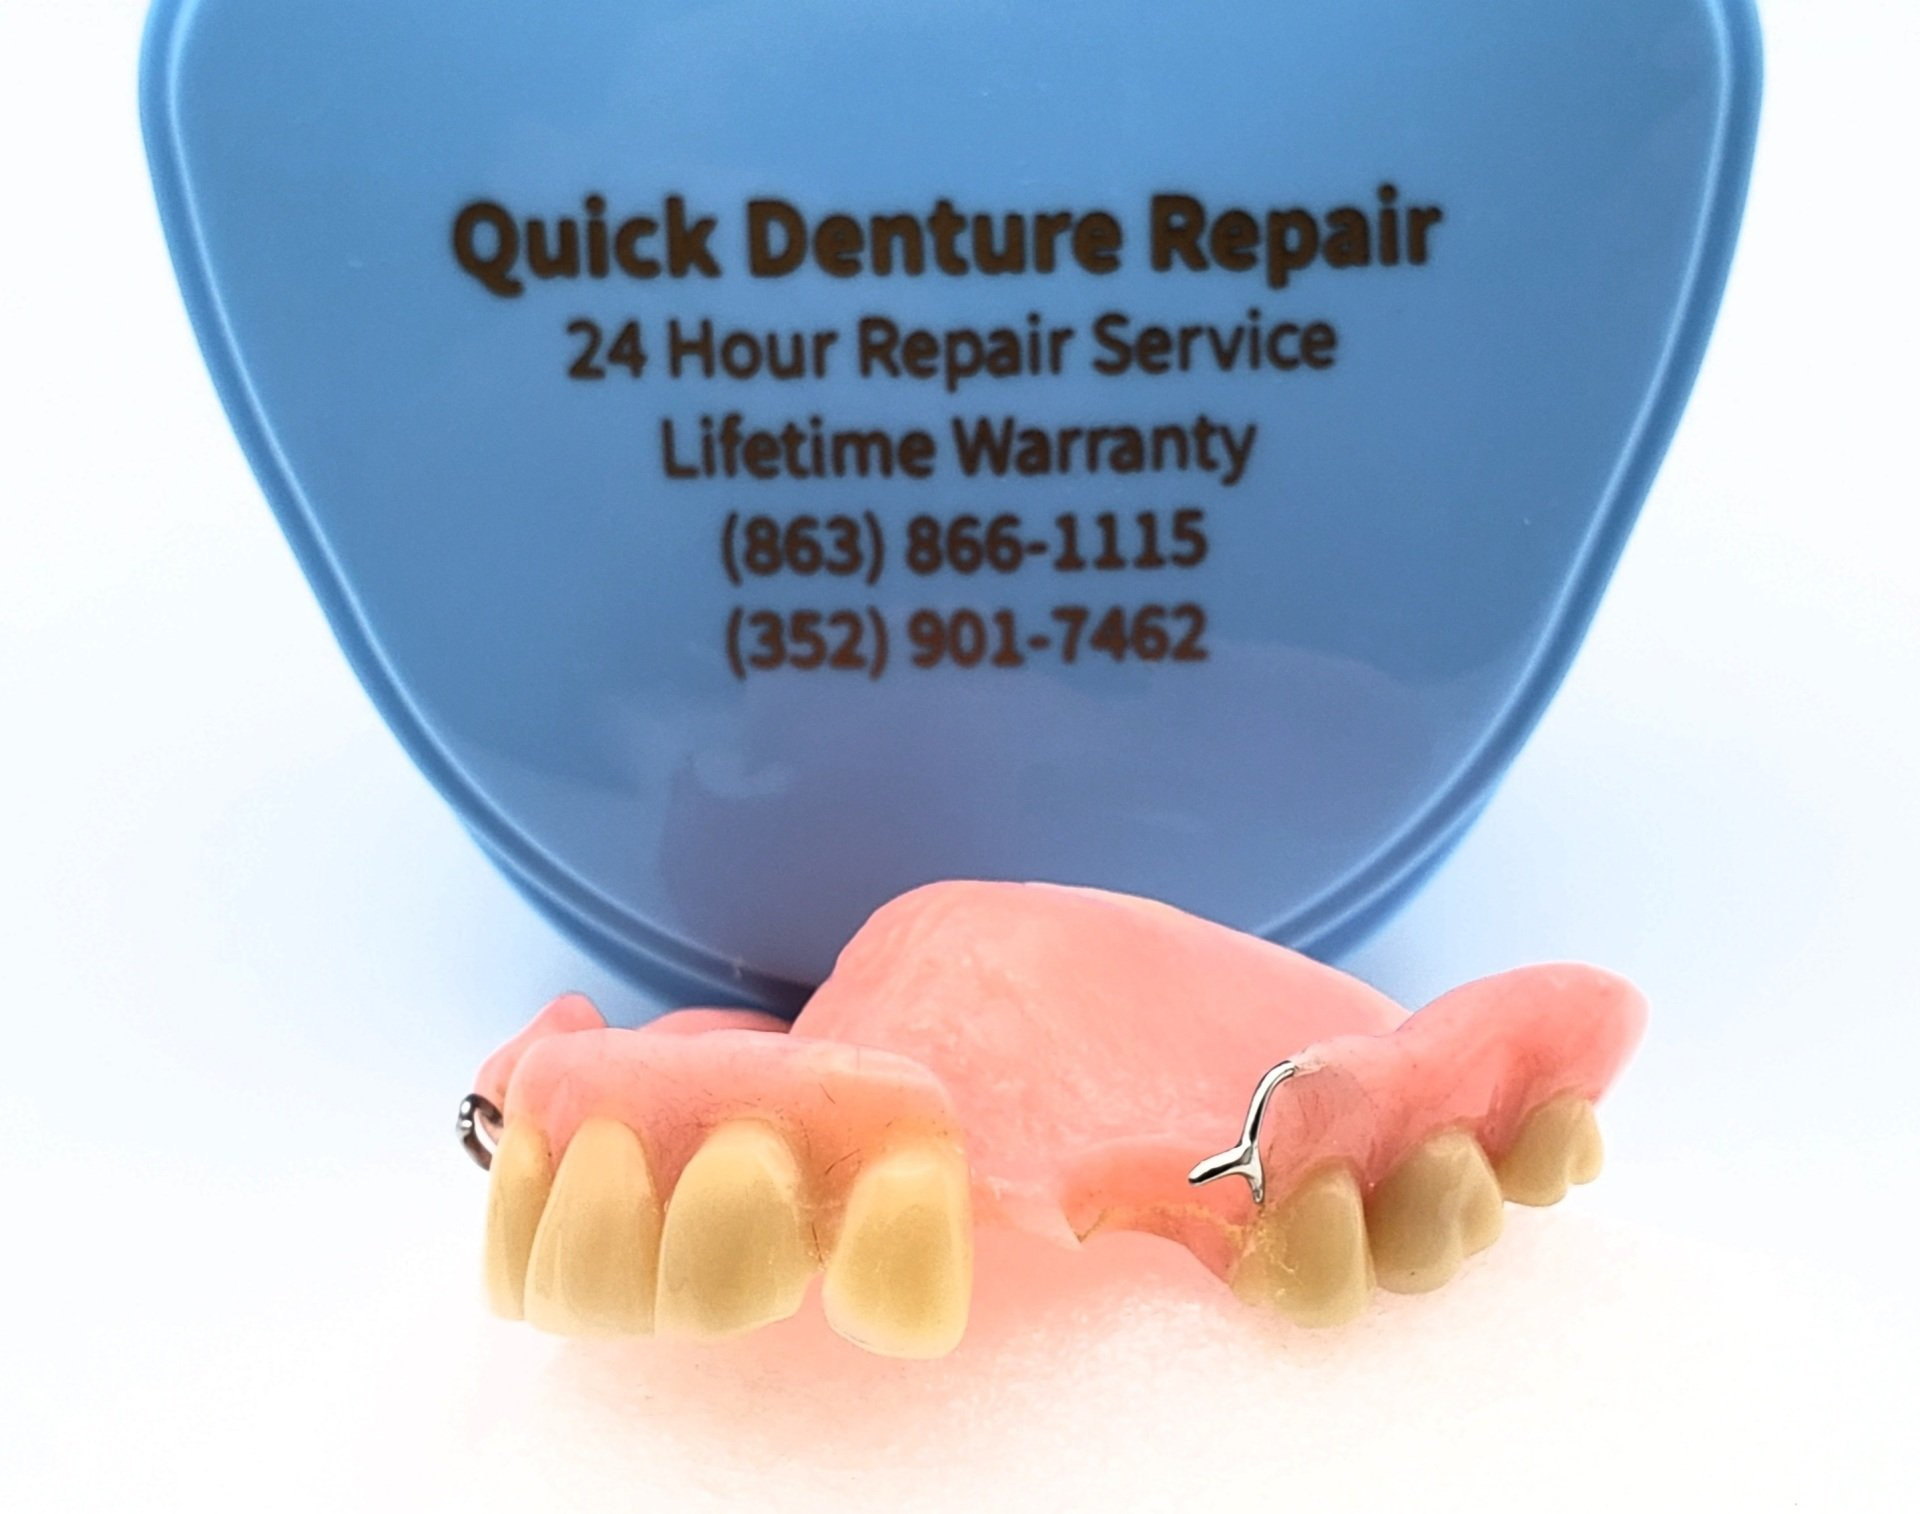 Partial denture with quick denture repair case